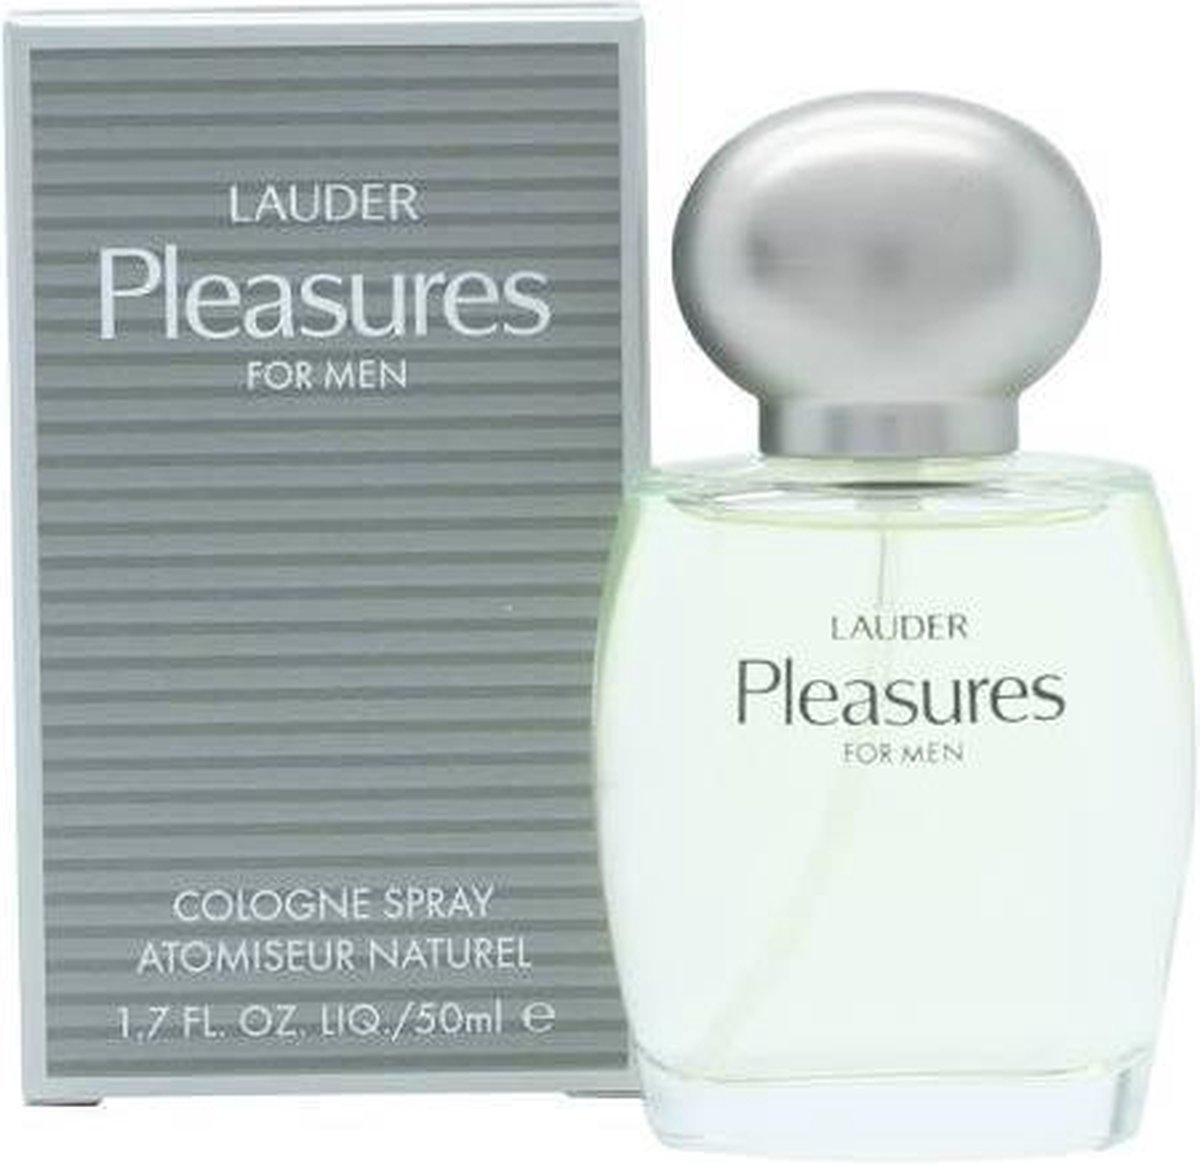 Pleasures man 50ml - LAUDER